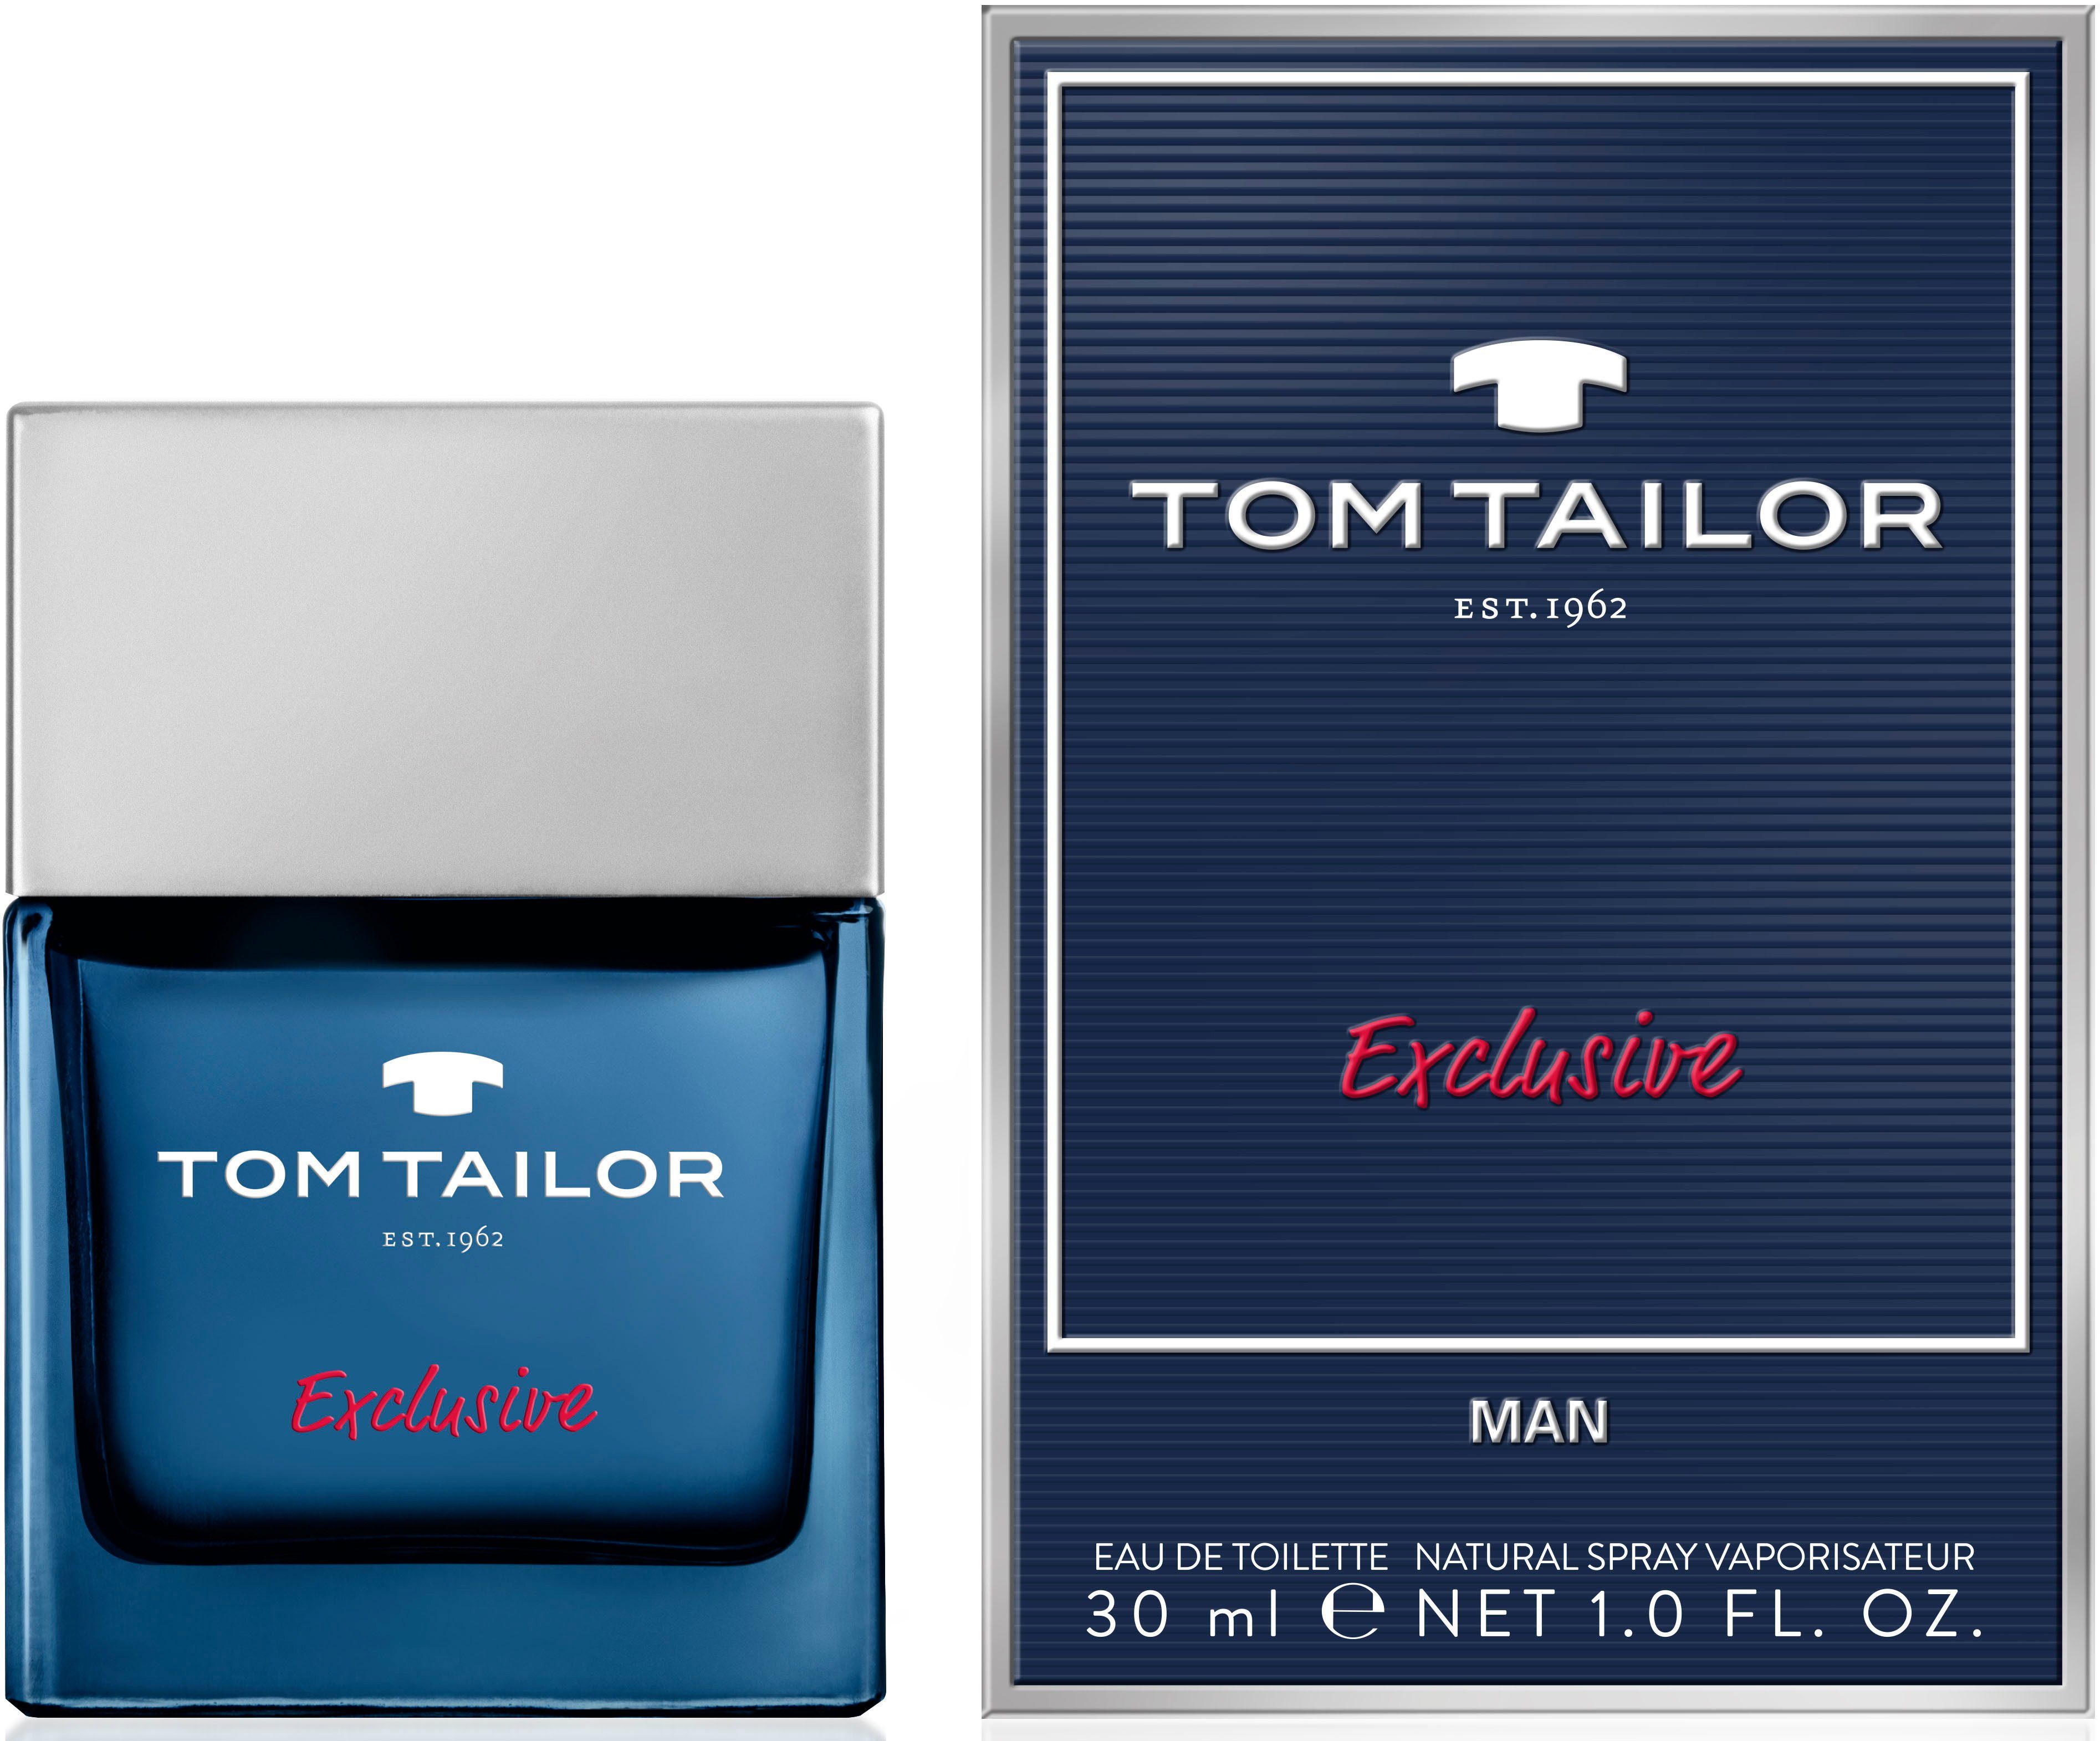 Man TAILOR Exclusive de Tailor Toilette Eau TOM Tom